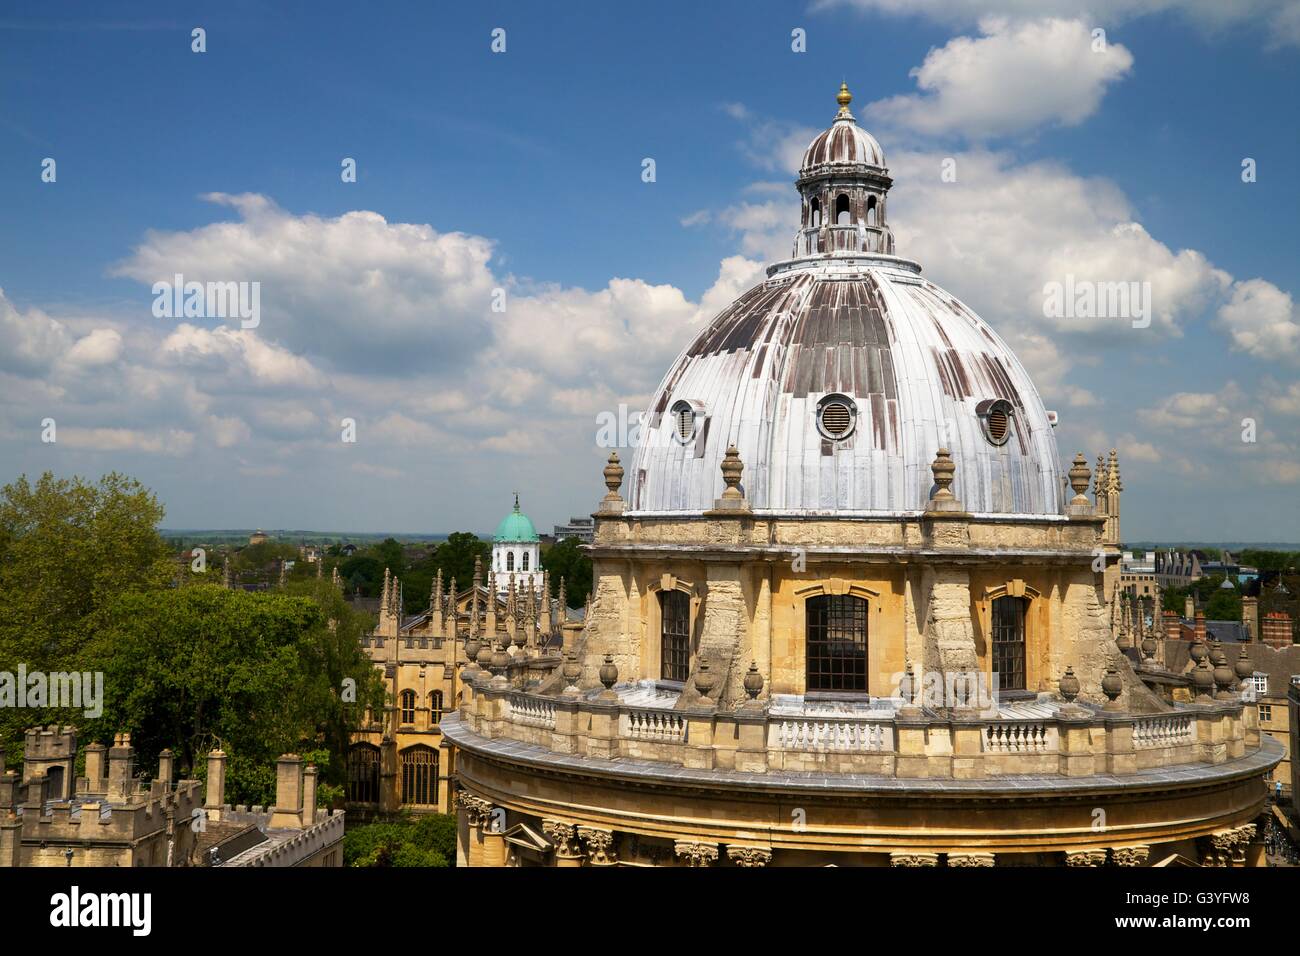 Vue sur le toit de l'Université de Radcliffe Camera église Sainte Marie la Vierge, Oxford, Oxfordshire, Angleterre, Royaume-Uni, Union européenne Banque D'Images